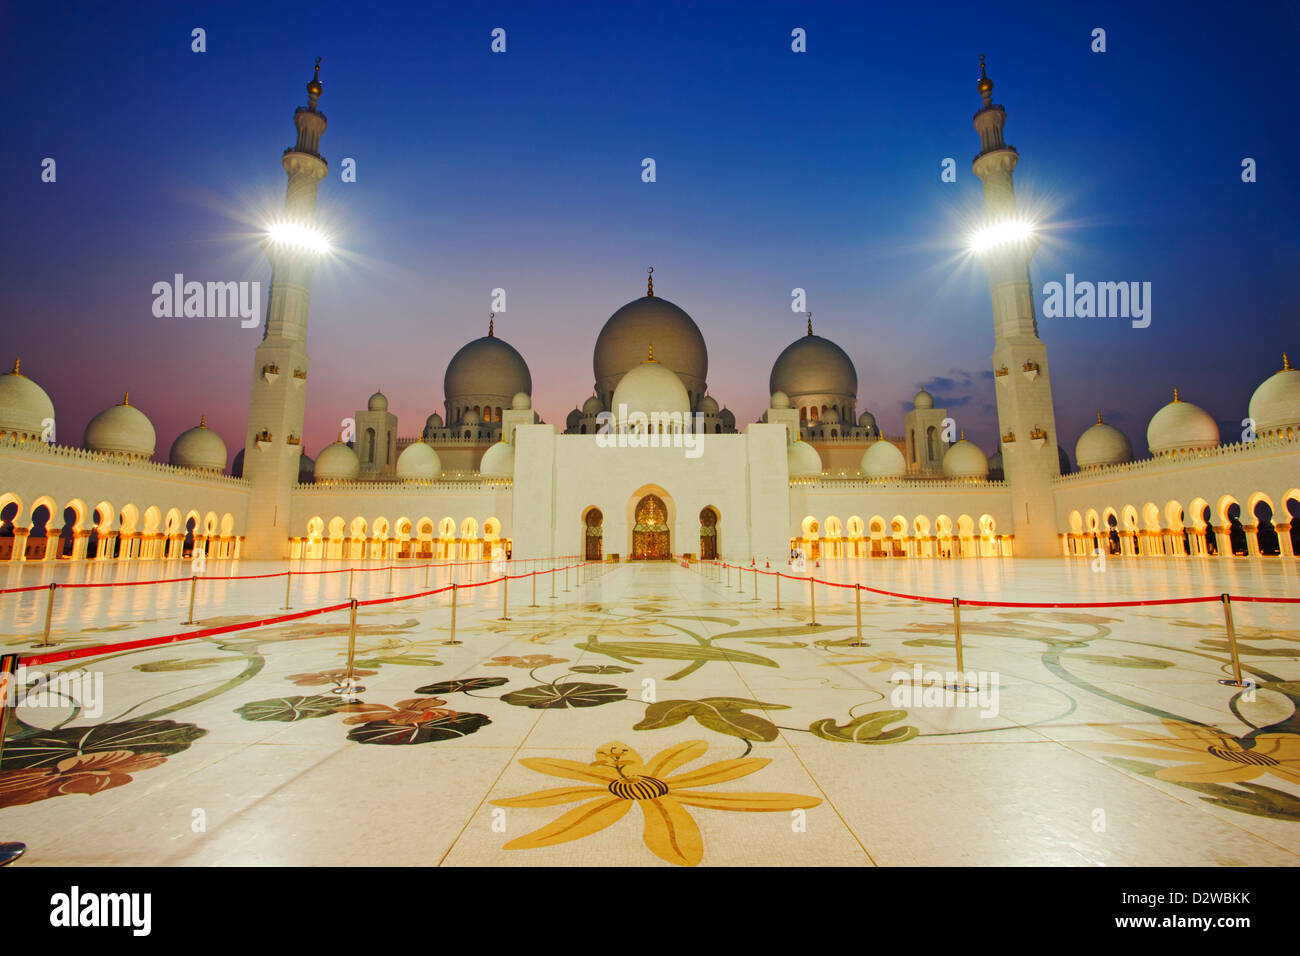 Sheikh Zayed Grand Moschee ist eine der größten Moscheen der Welt in Abu Dhabi, Vereinigte Arabische Emirate. Stockfoto